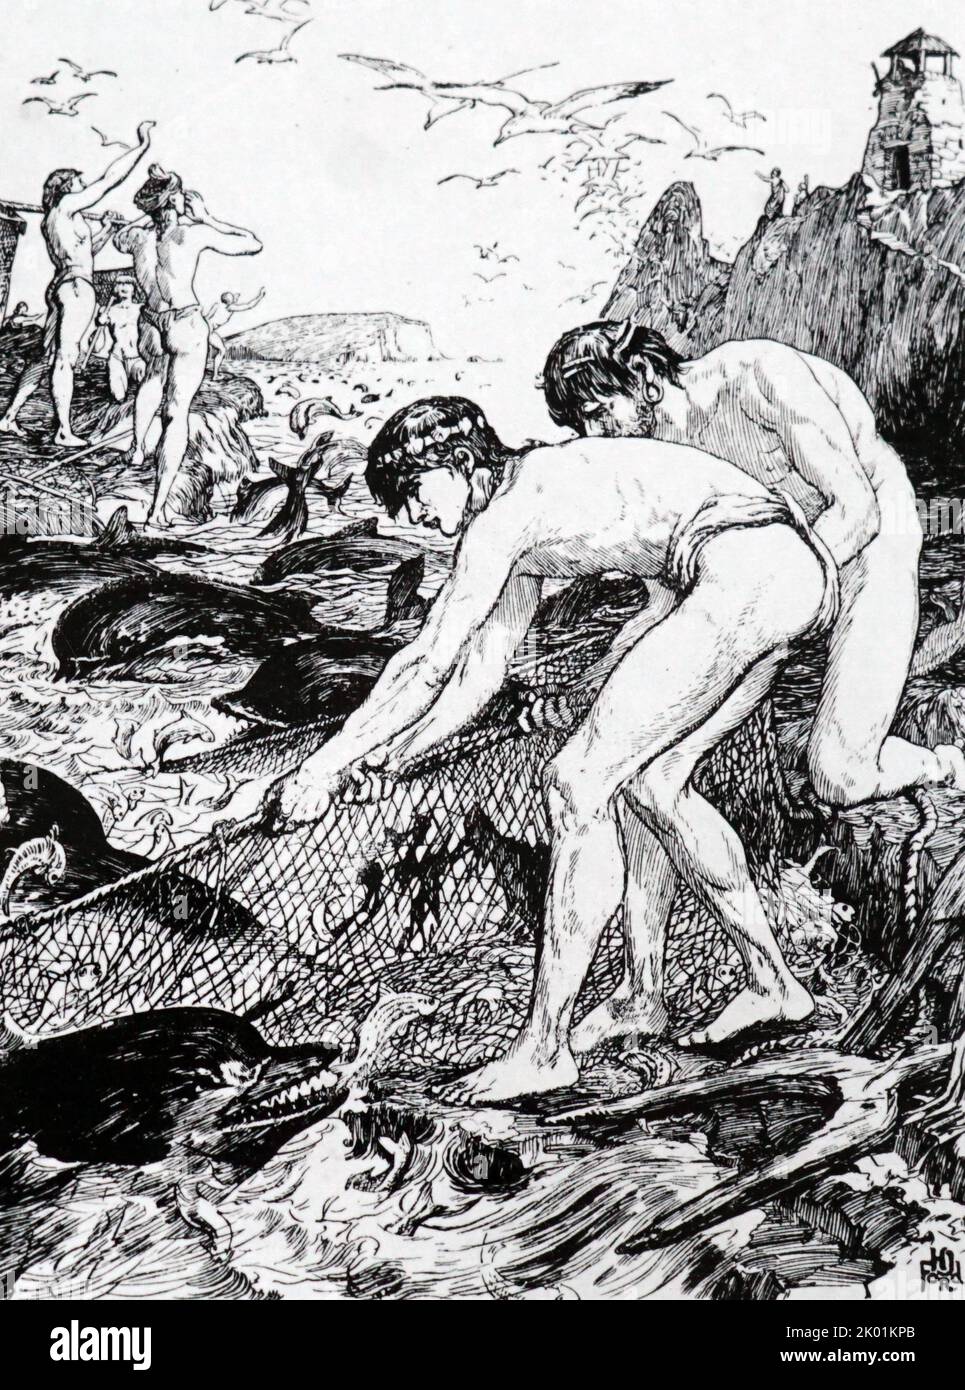 Illustration des Berichts von Plinius Secundus, dass in der Gegend von Narbonne, als sich die Schwärme von Meeräschen in den Untiefen befanden, die lokalen Fischer die Delphine auffordern würden, die Fische einzuäumen, um sie davon abzuhalten, in tieferes Wasser zu fliehen. Stockfoto